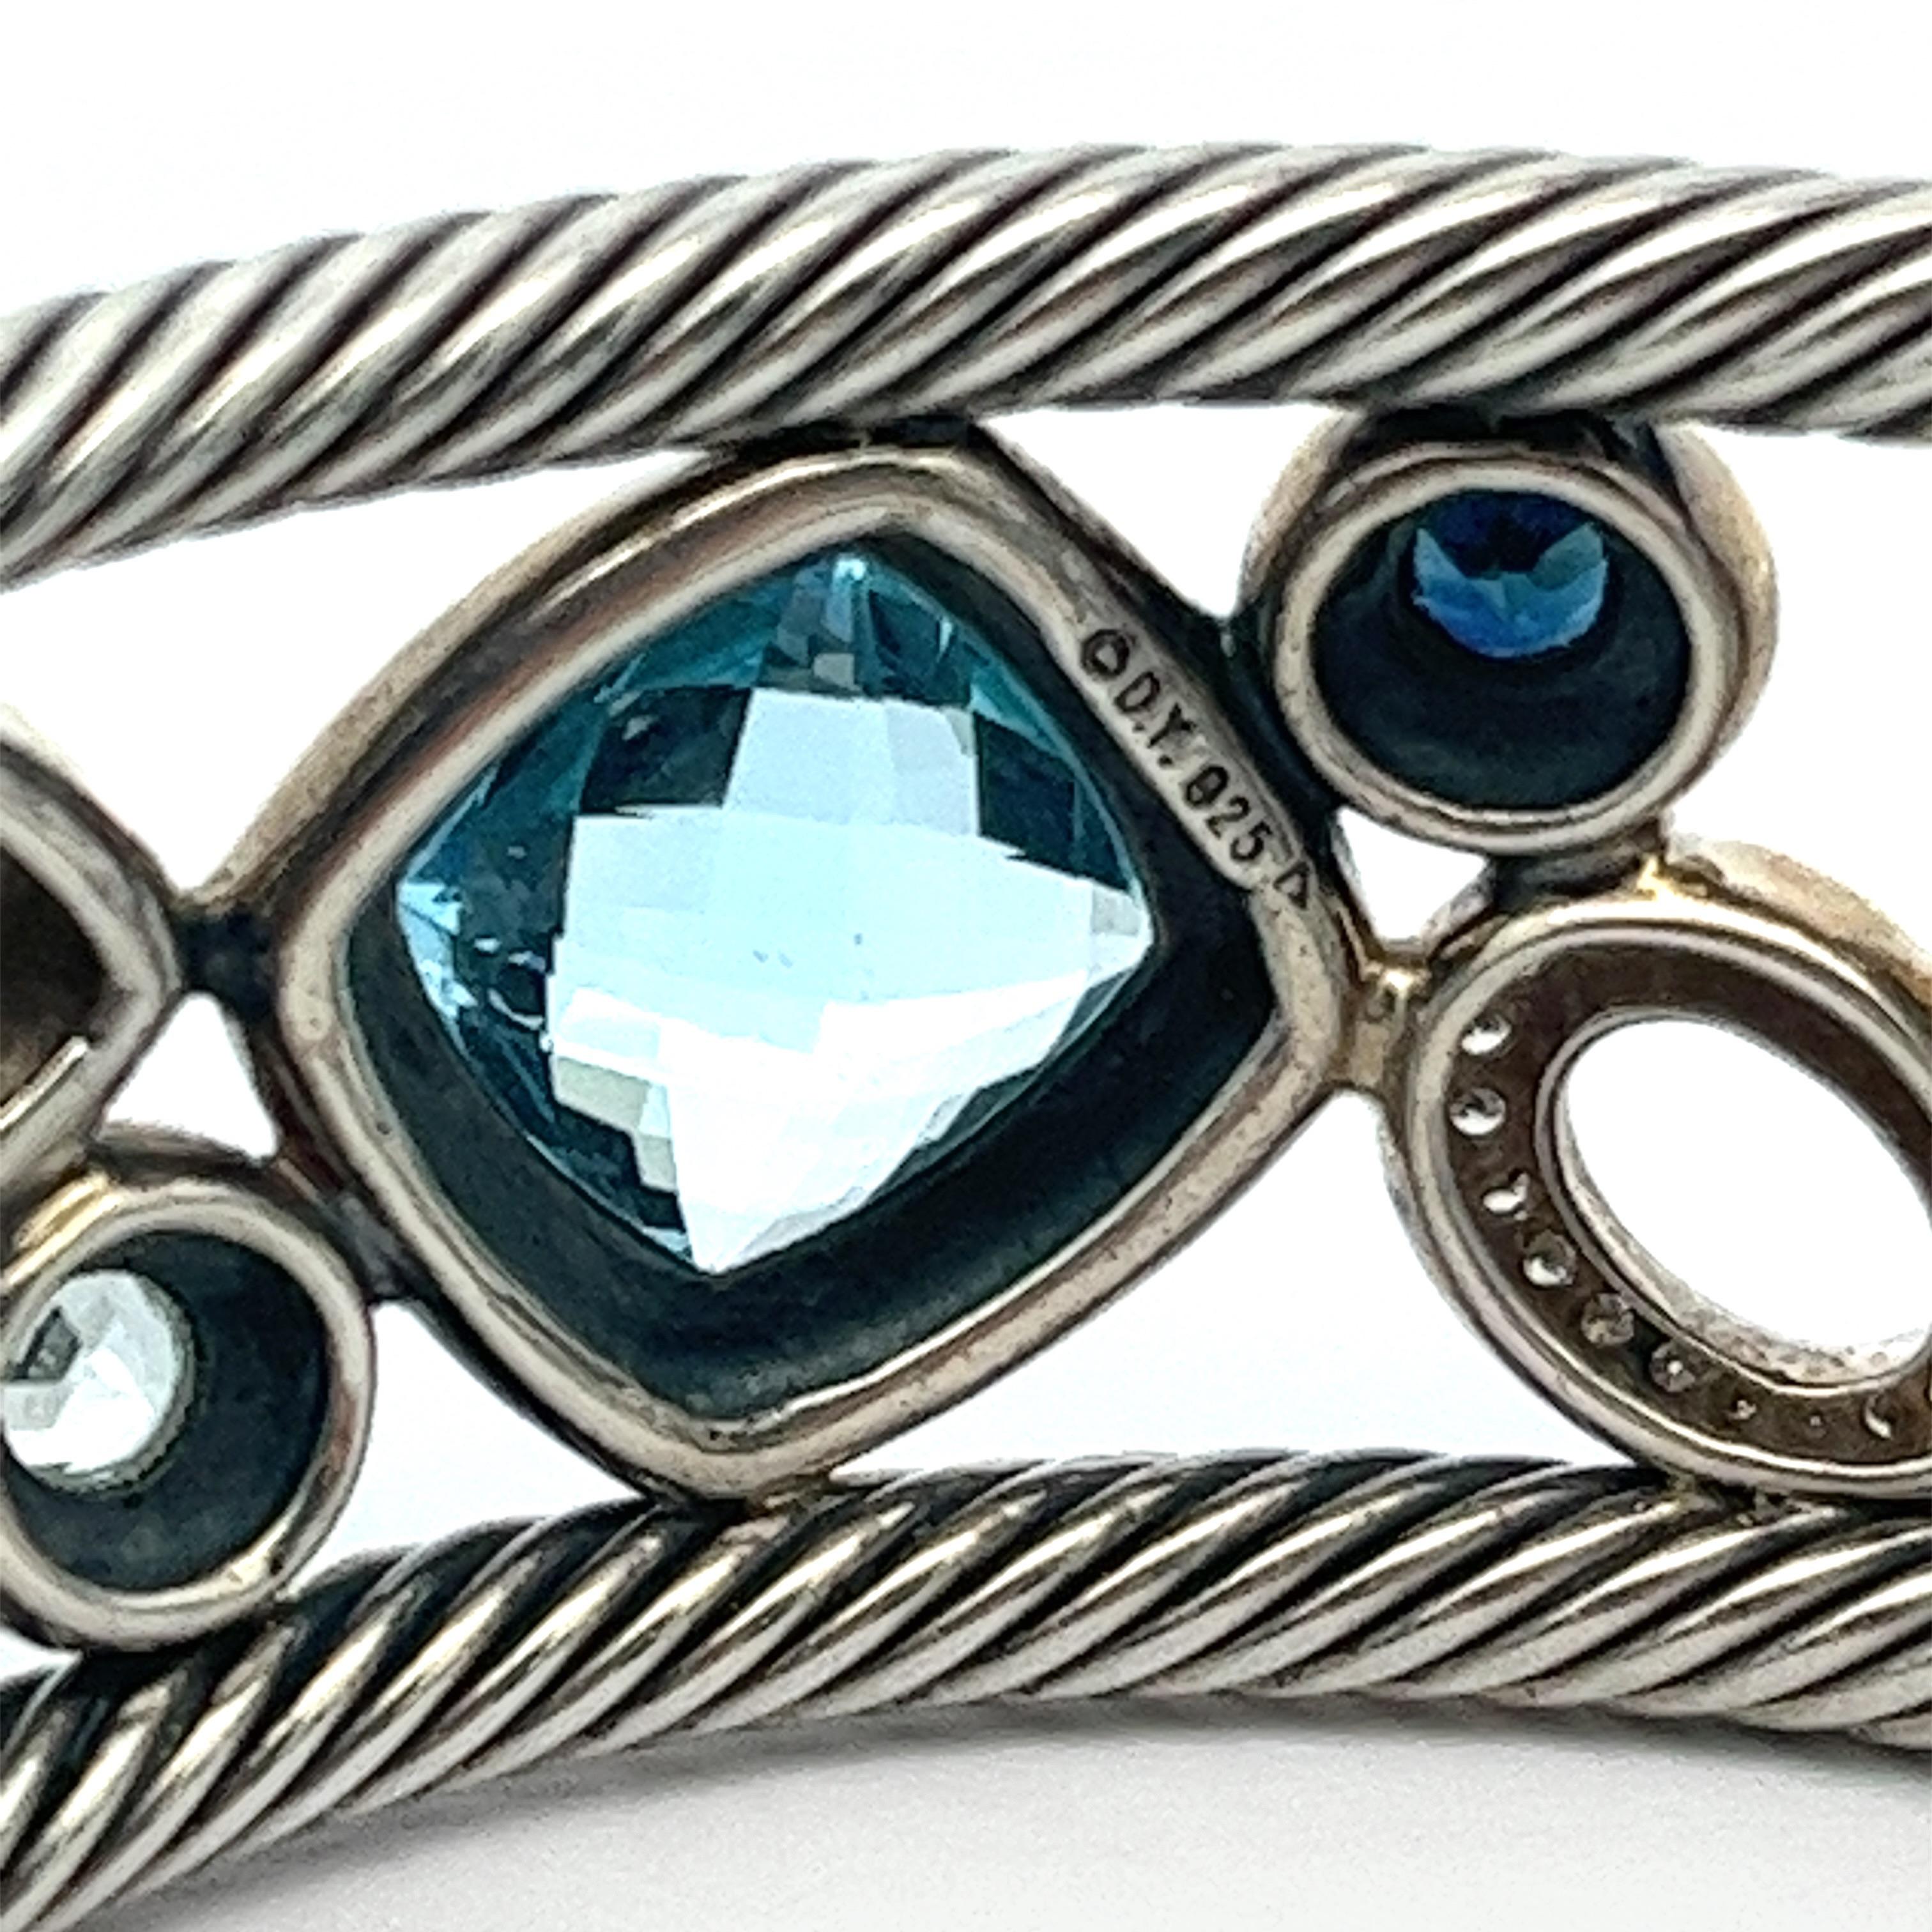 Modernist David Yurman Blue Oval Mosaic Cuff Bracelet in Sterling Silver 925 1